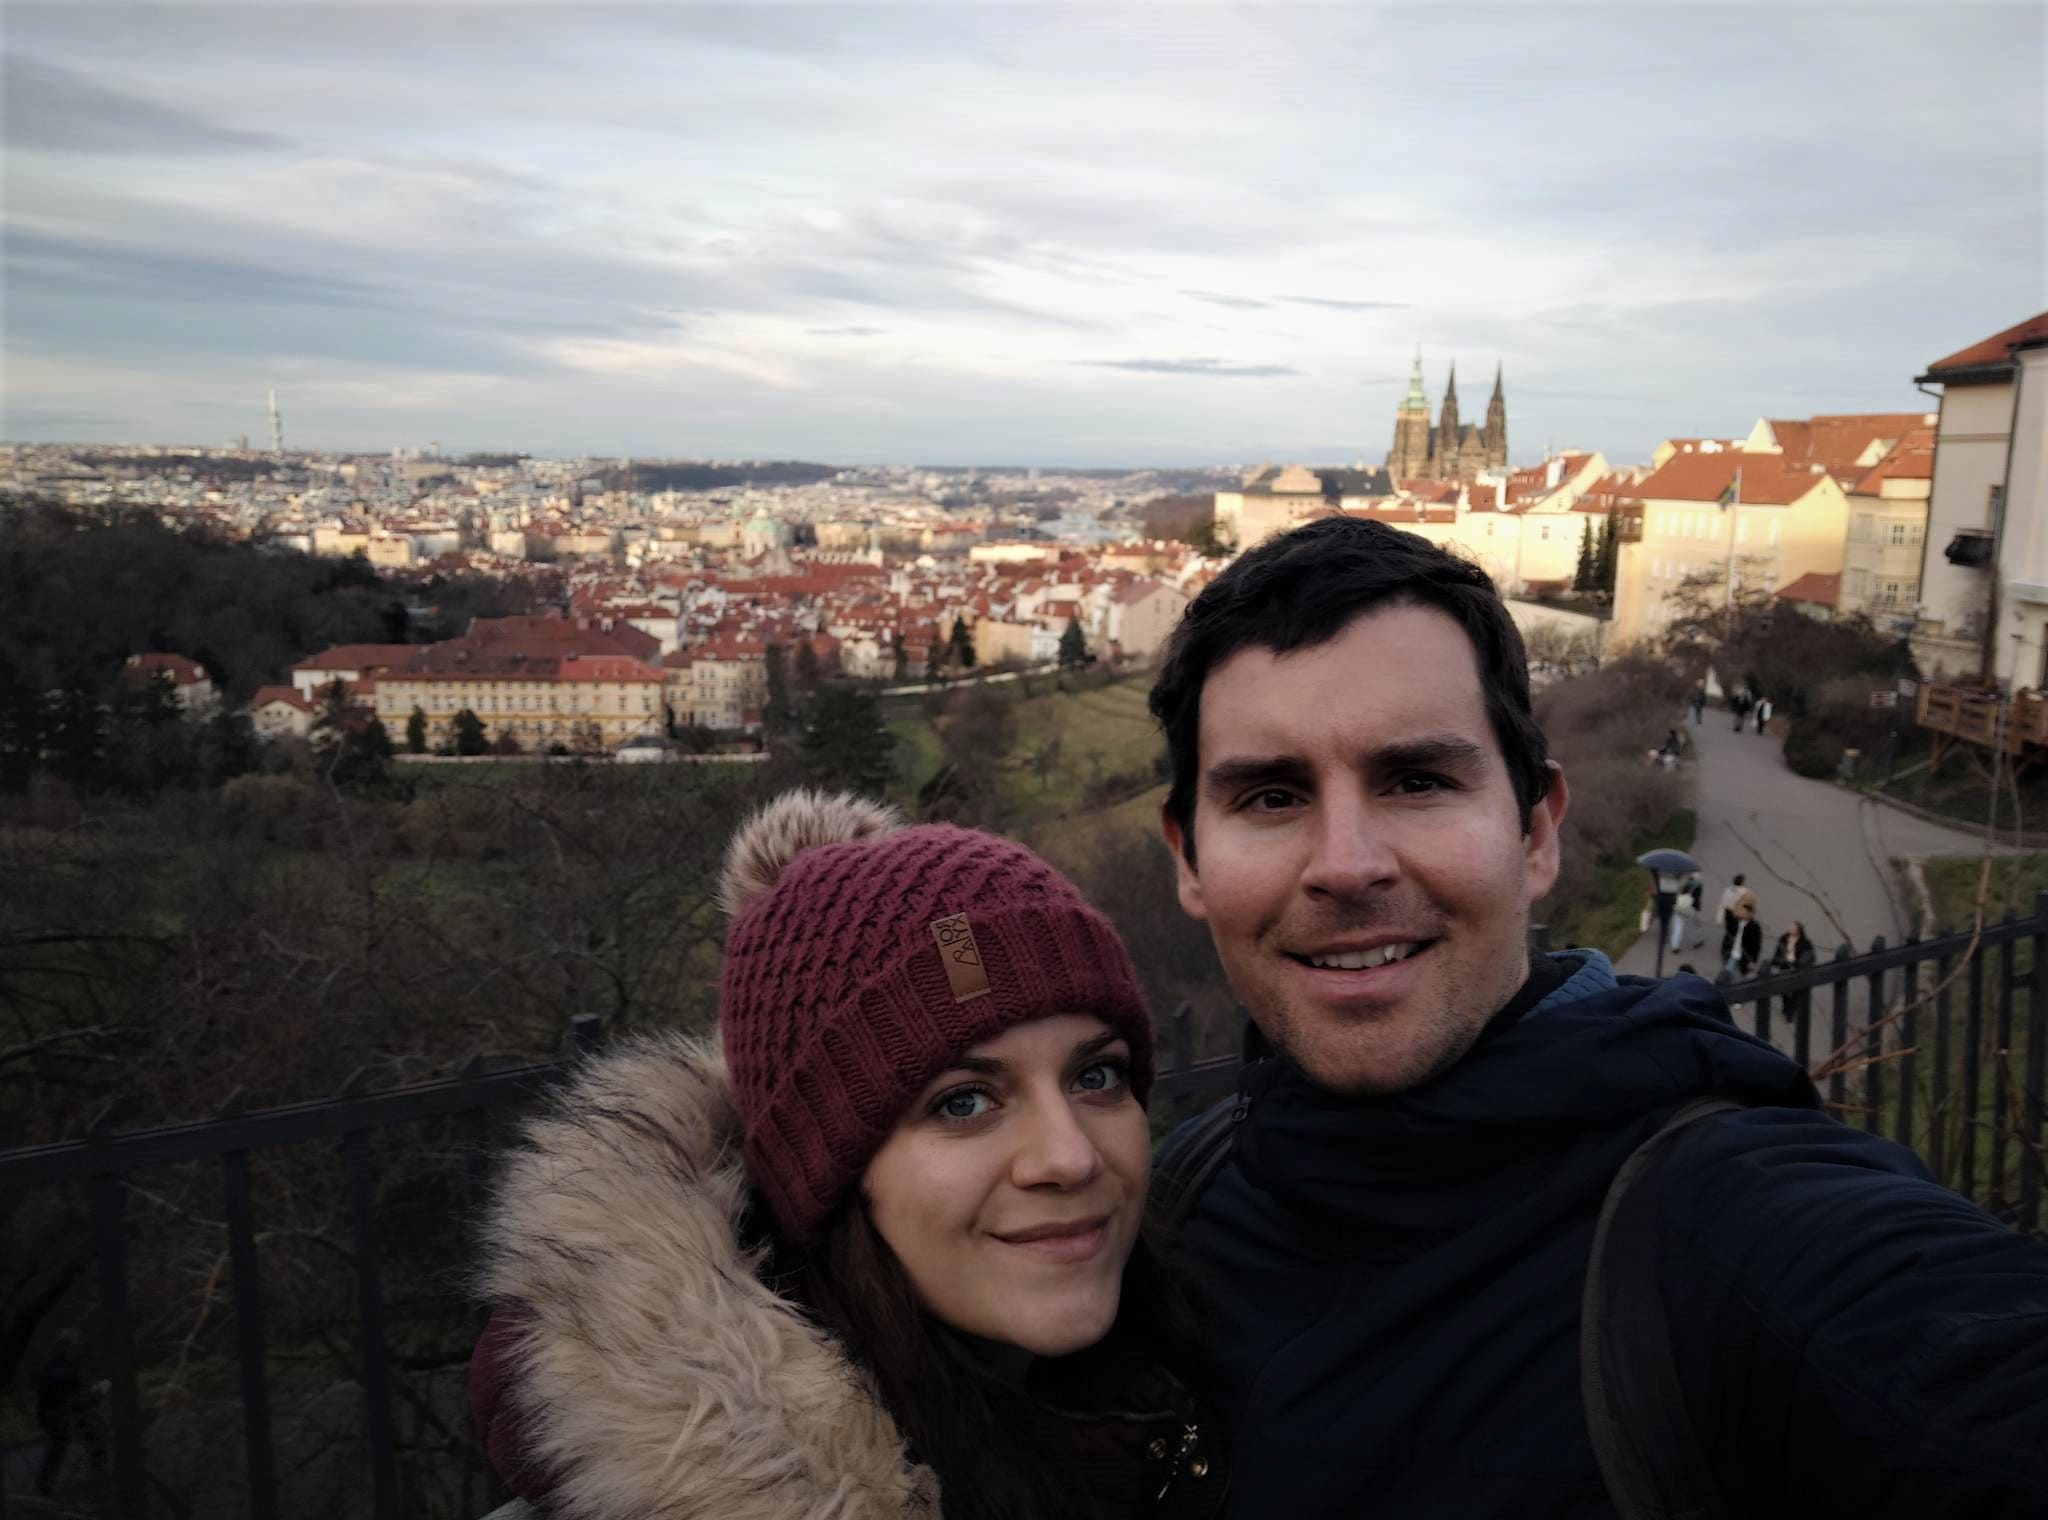 Prague ville romantique a découvrir en amoureux